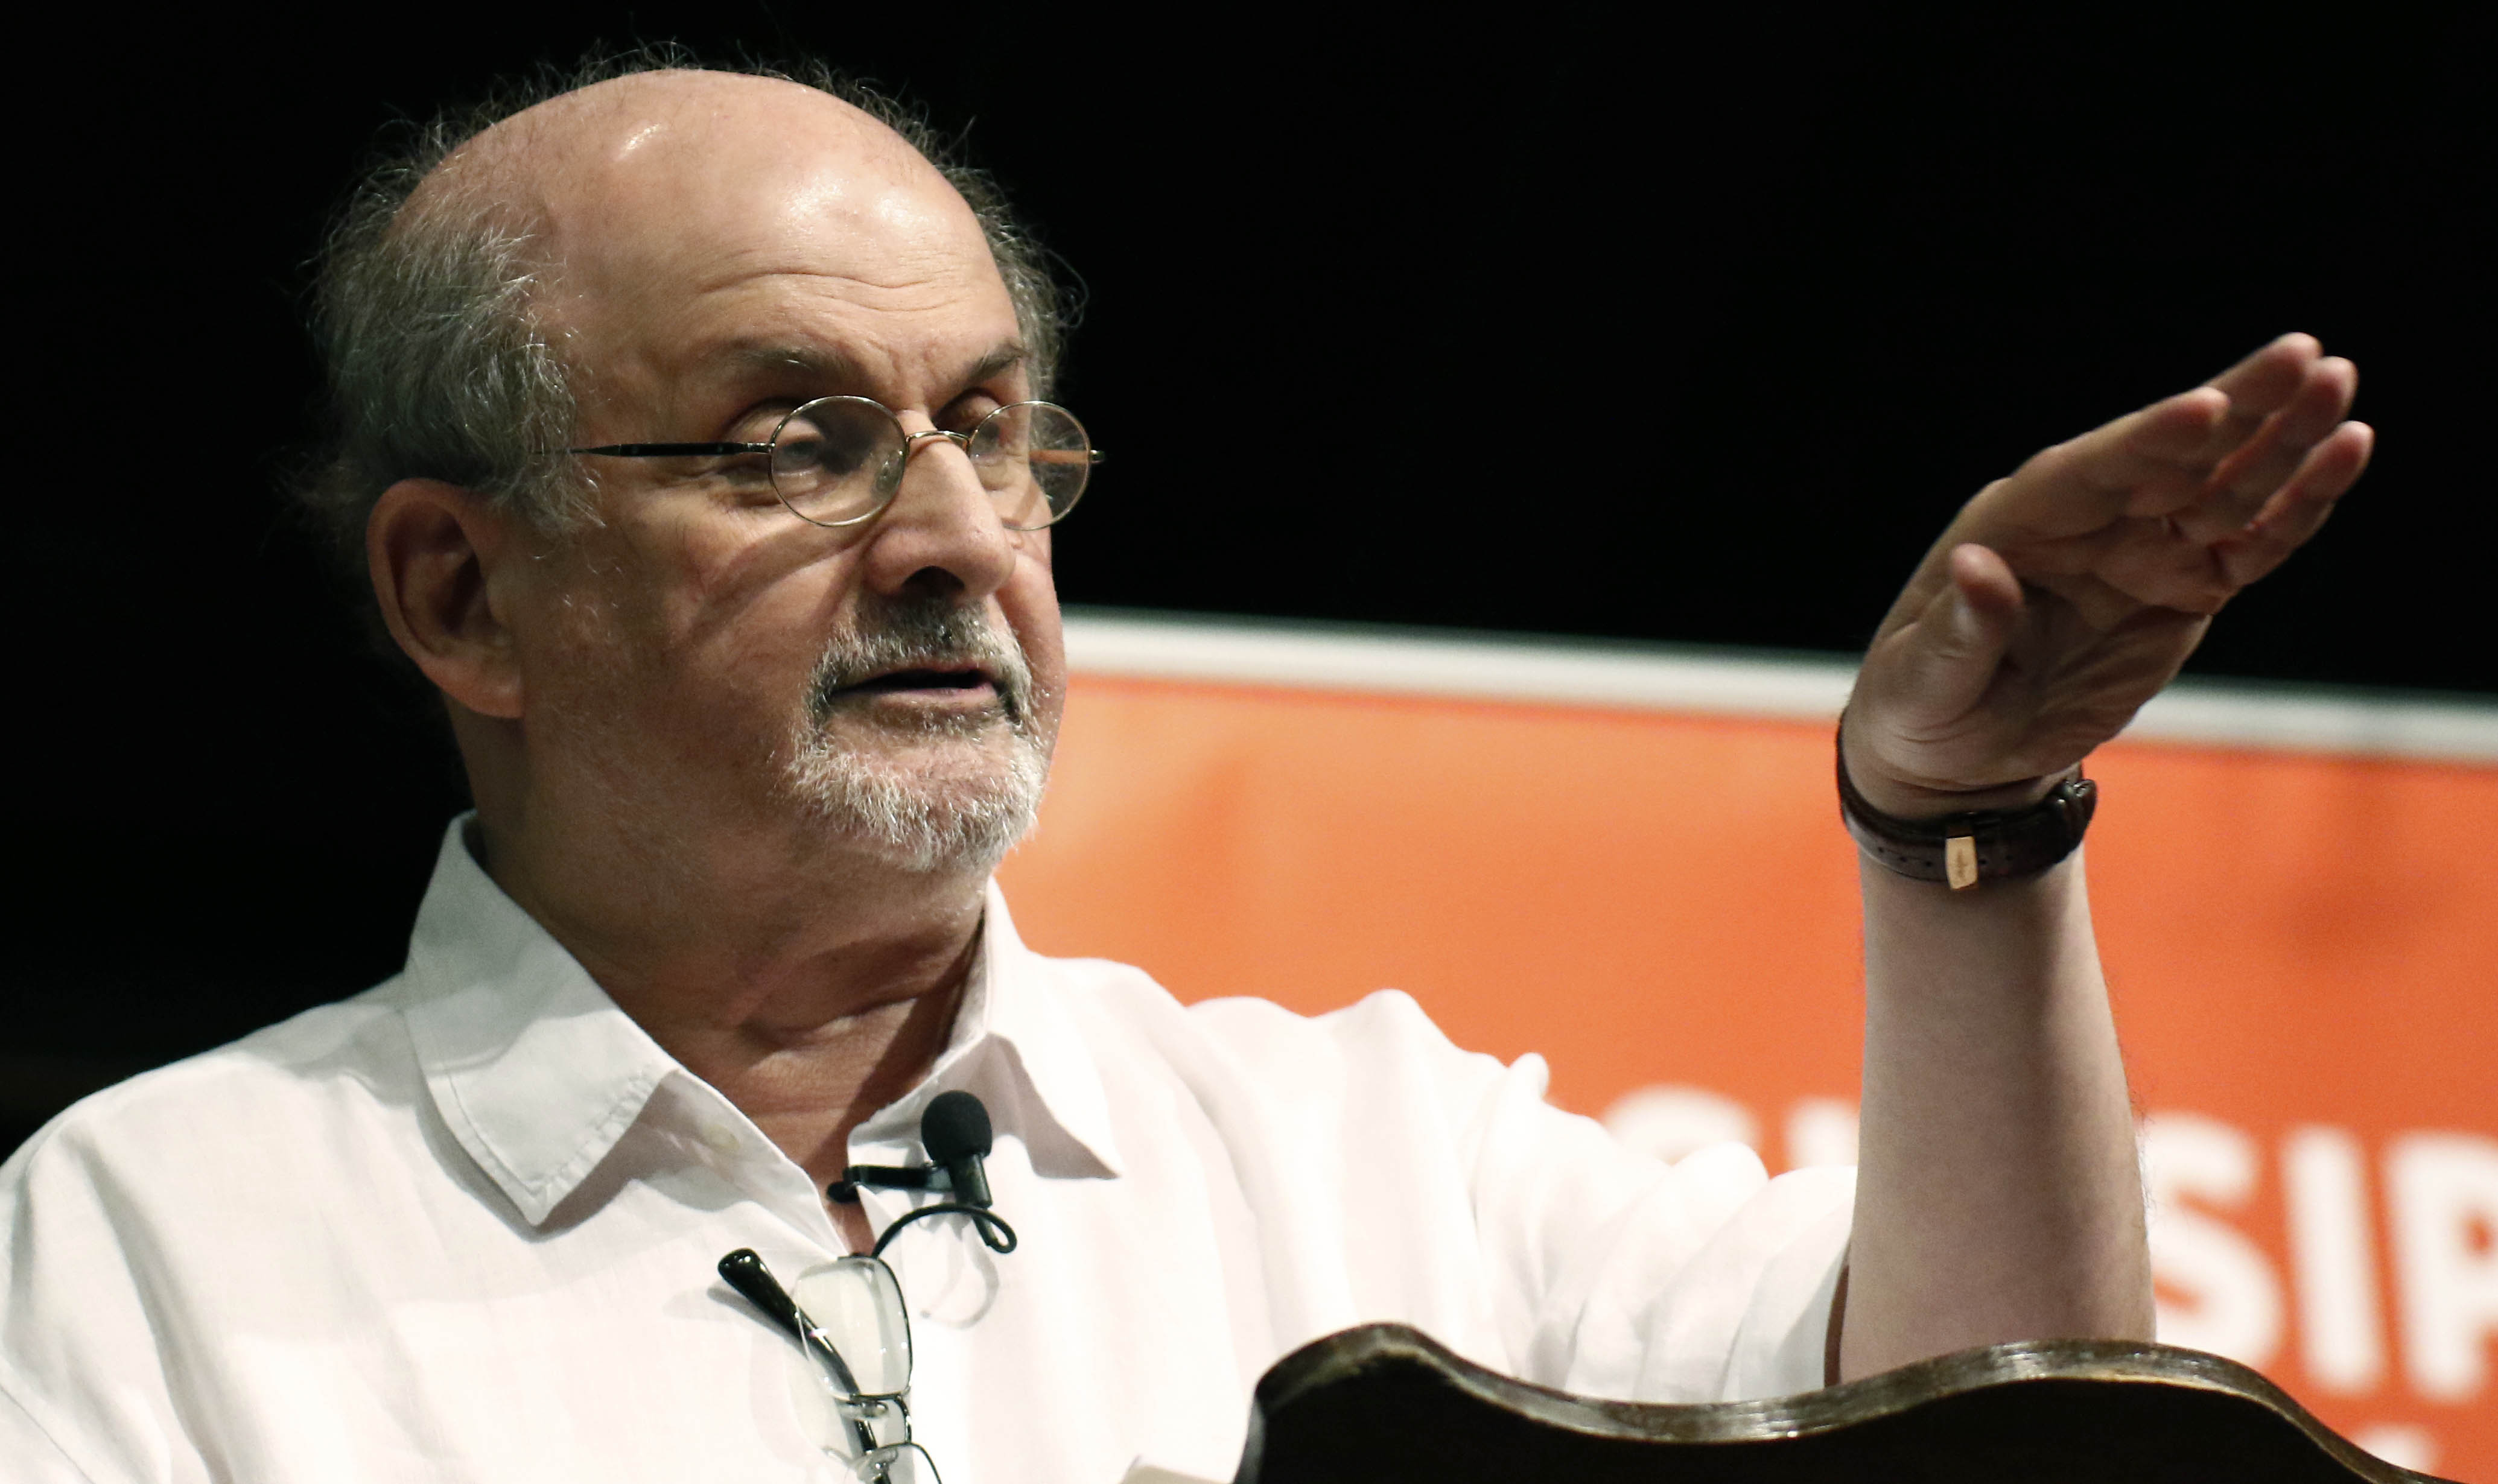 Alabanza, preocupación en Irán después del ataque de Rushdie; gobierno tranquilo